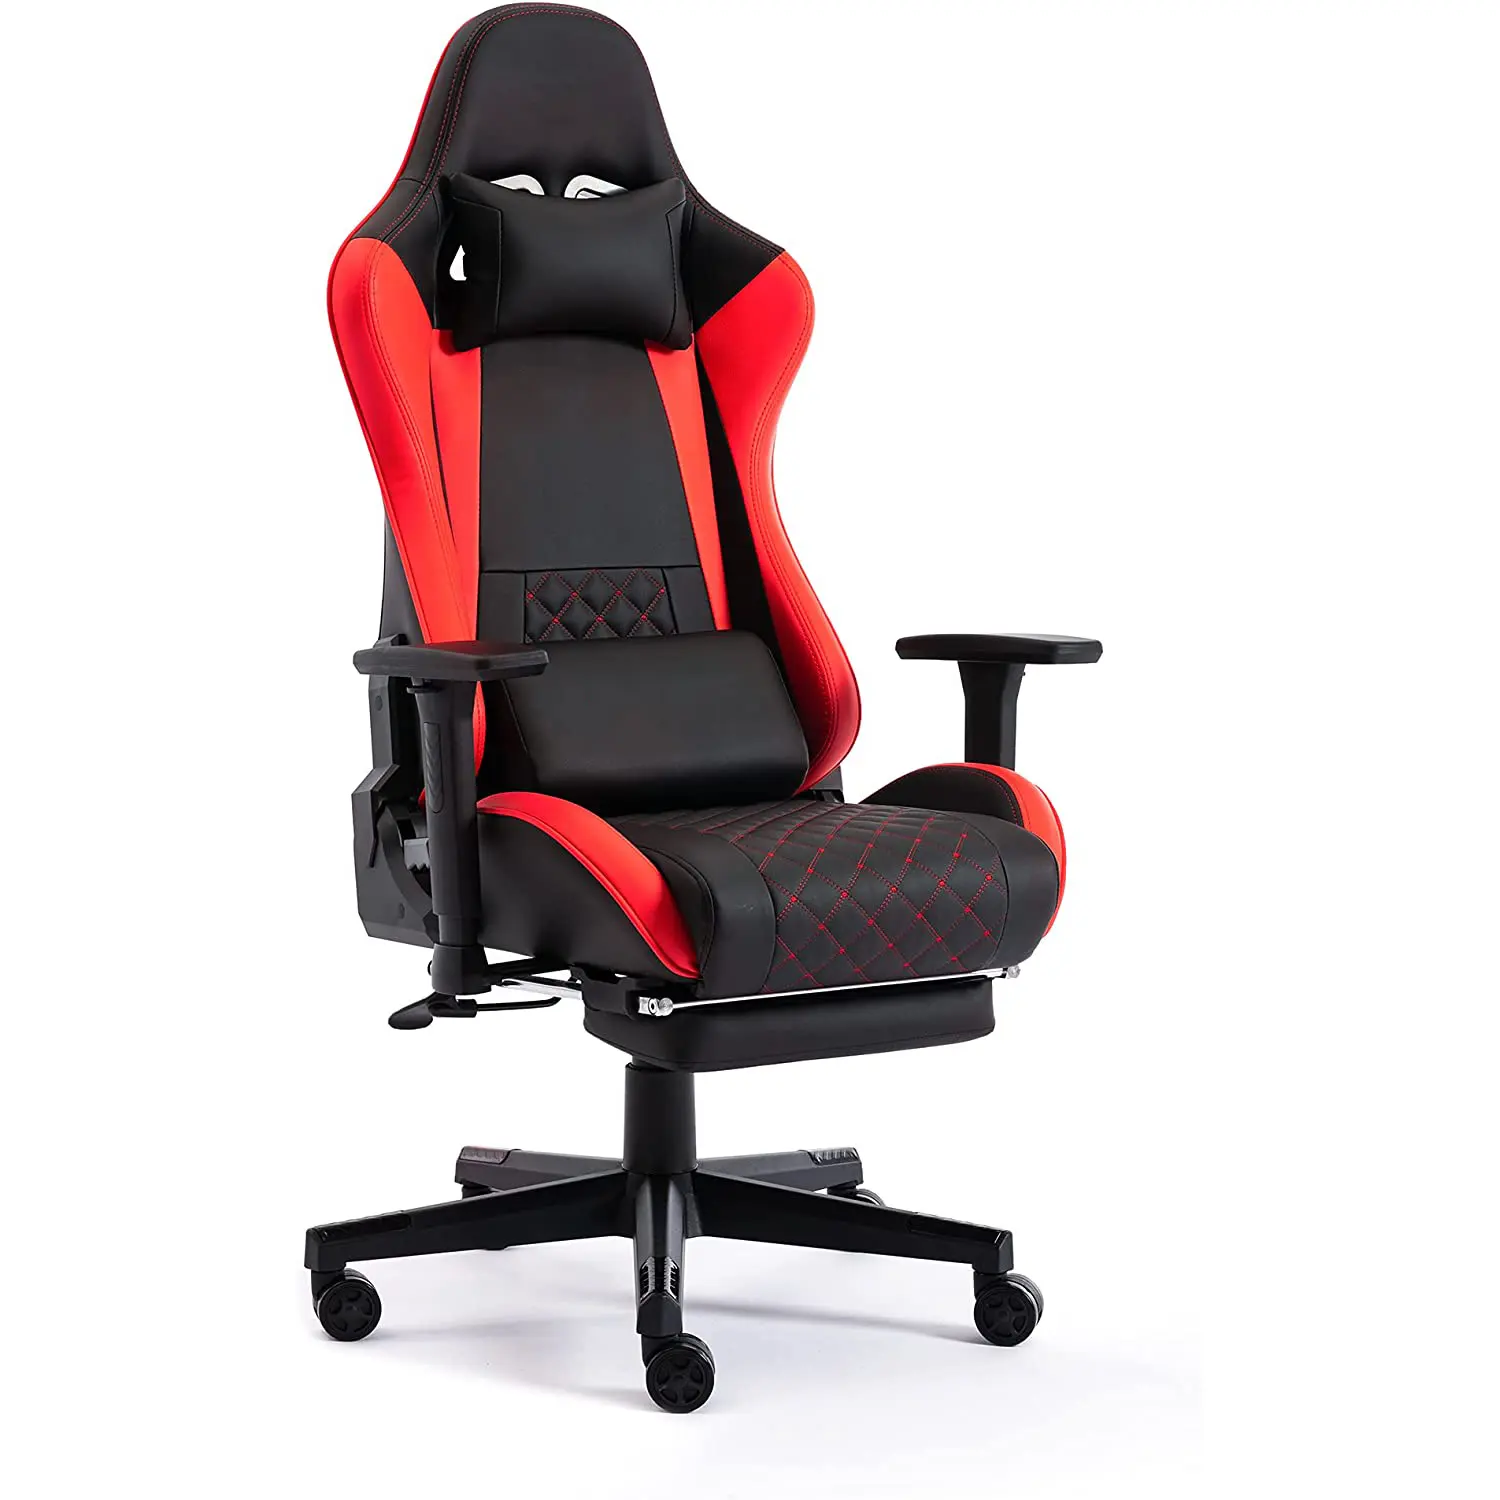 Gaming Home Office Desk Chairs Cadeira Do Computador Costas Altas com Apoio Para Os Pés Cadeira Vermelha Gaming Escritório Reclinado De Corrida